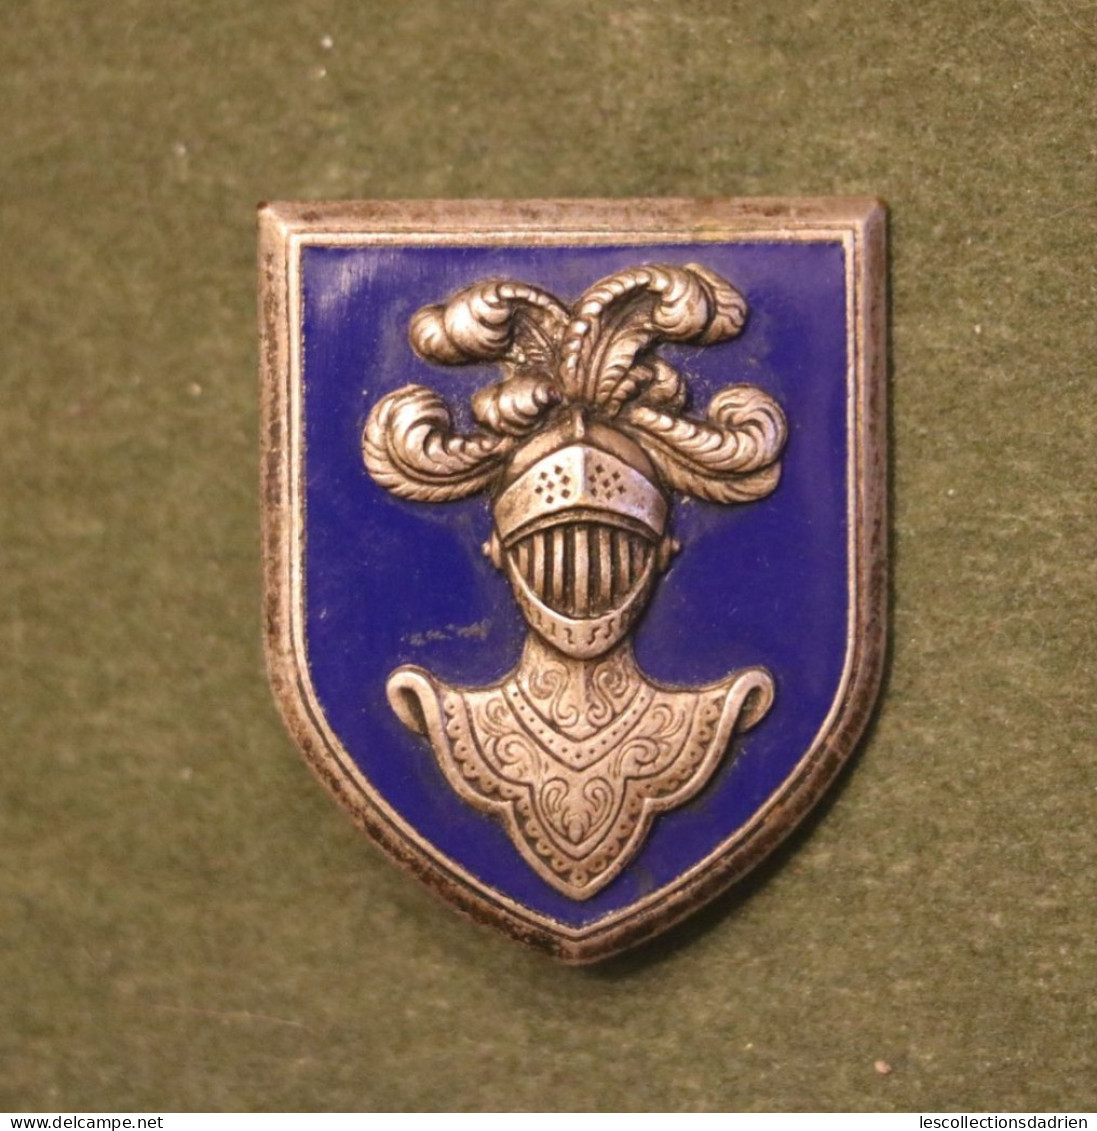 Insigne Arme Blindée - Cavalerie - Cavalry - Armée De Terre